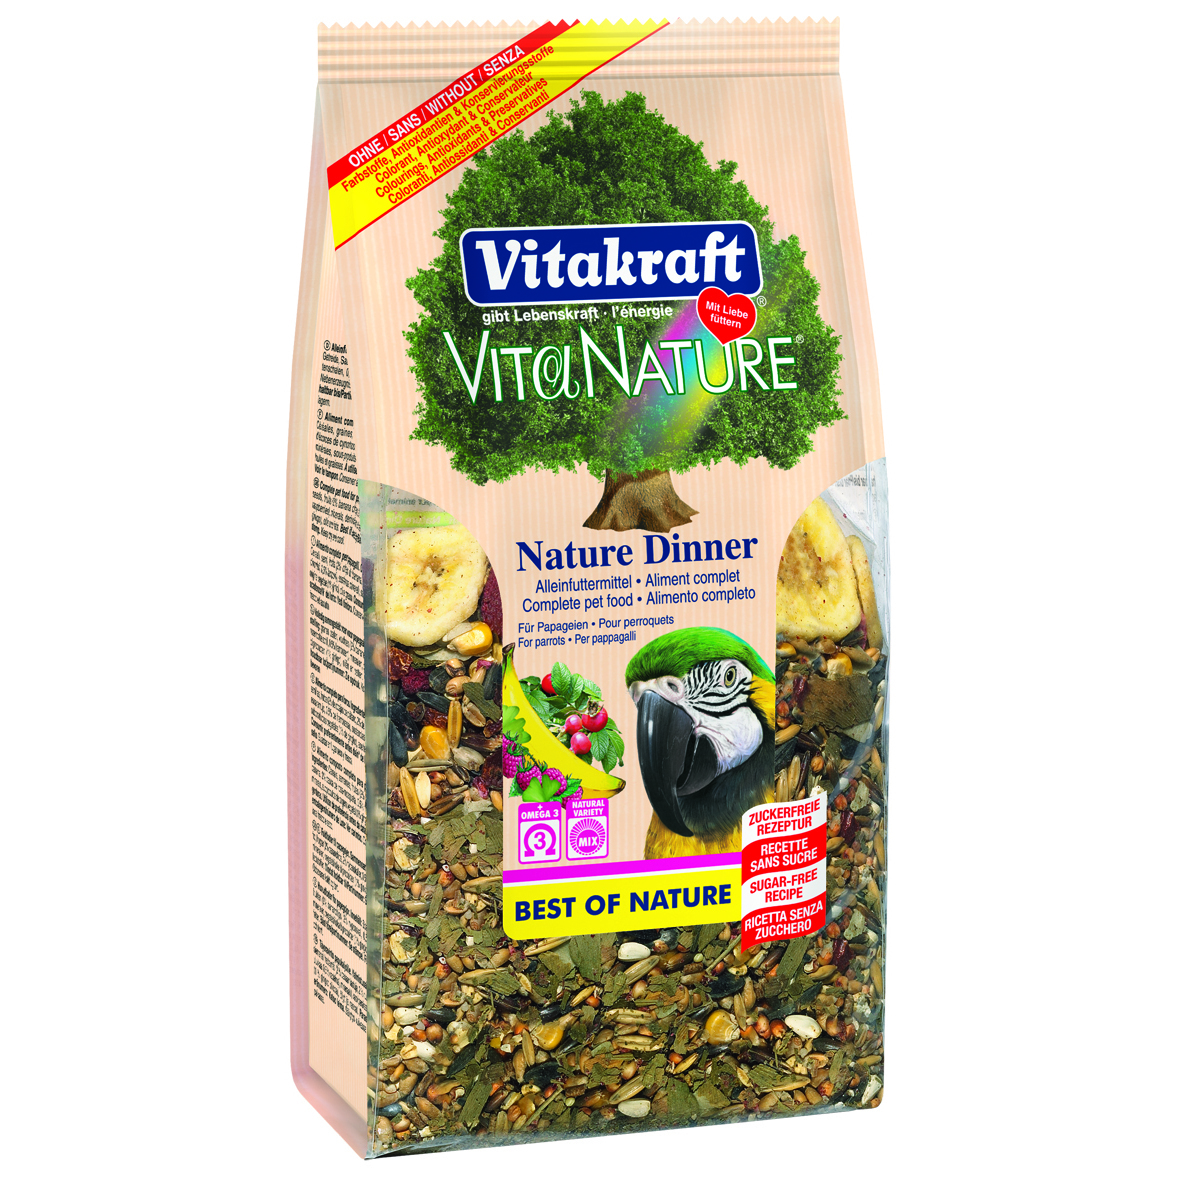 Vitakraft Vita Nature Dinner für Papageien 750g 3x750g